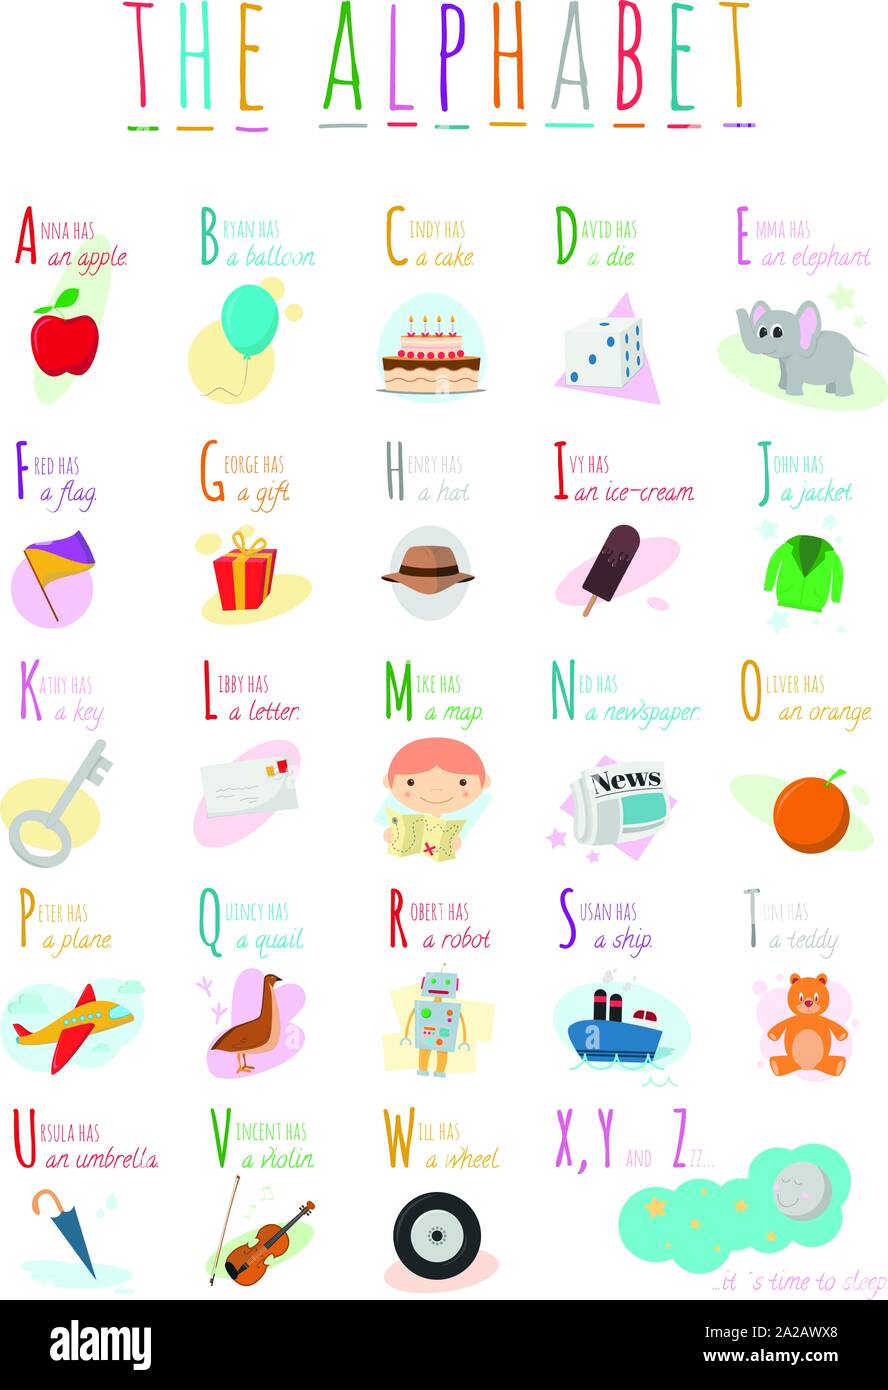 Cute Cartoon illustriert Alphabet mit Namen und Objekten. Englische Alphabet. Lernen zu lesen. Isolierte Vector Illustration. Stock Vektor